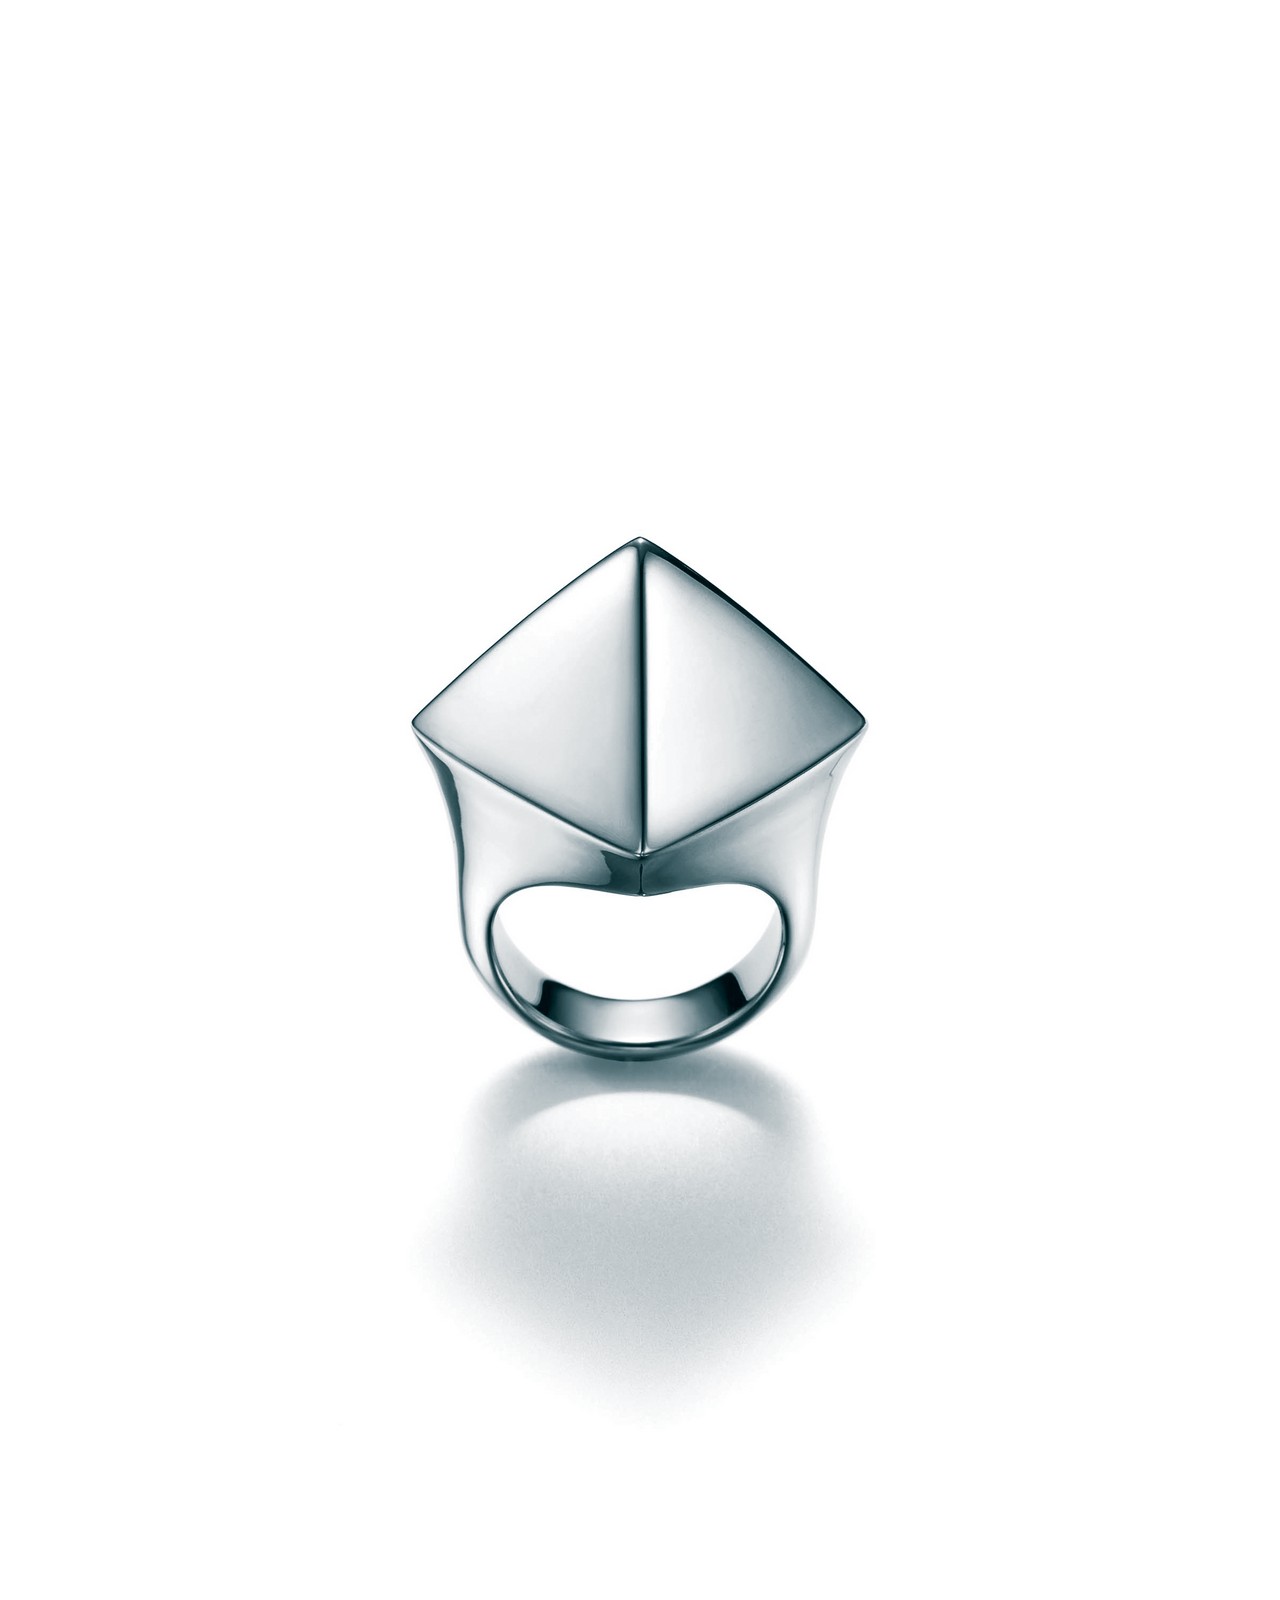 Tiffany & Co anelli: la collezione Out of Retirement in argento, le foto